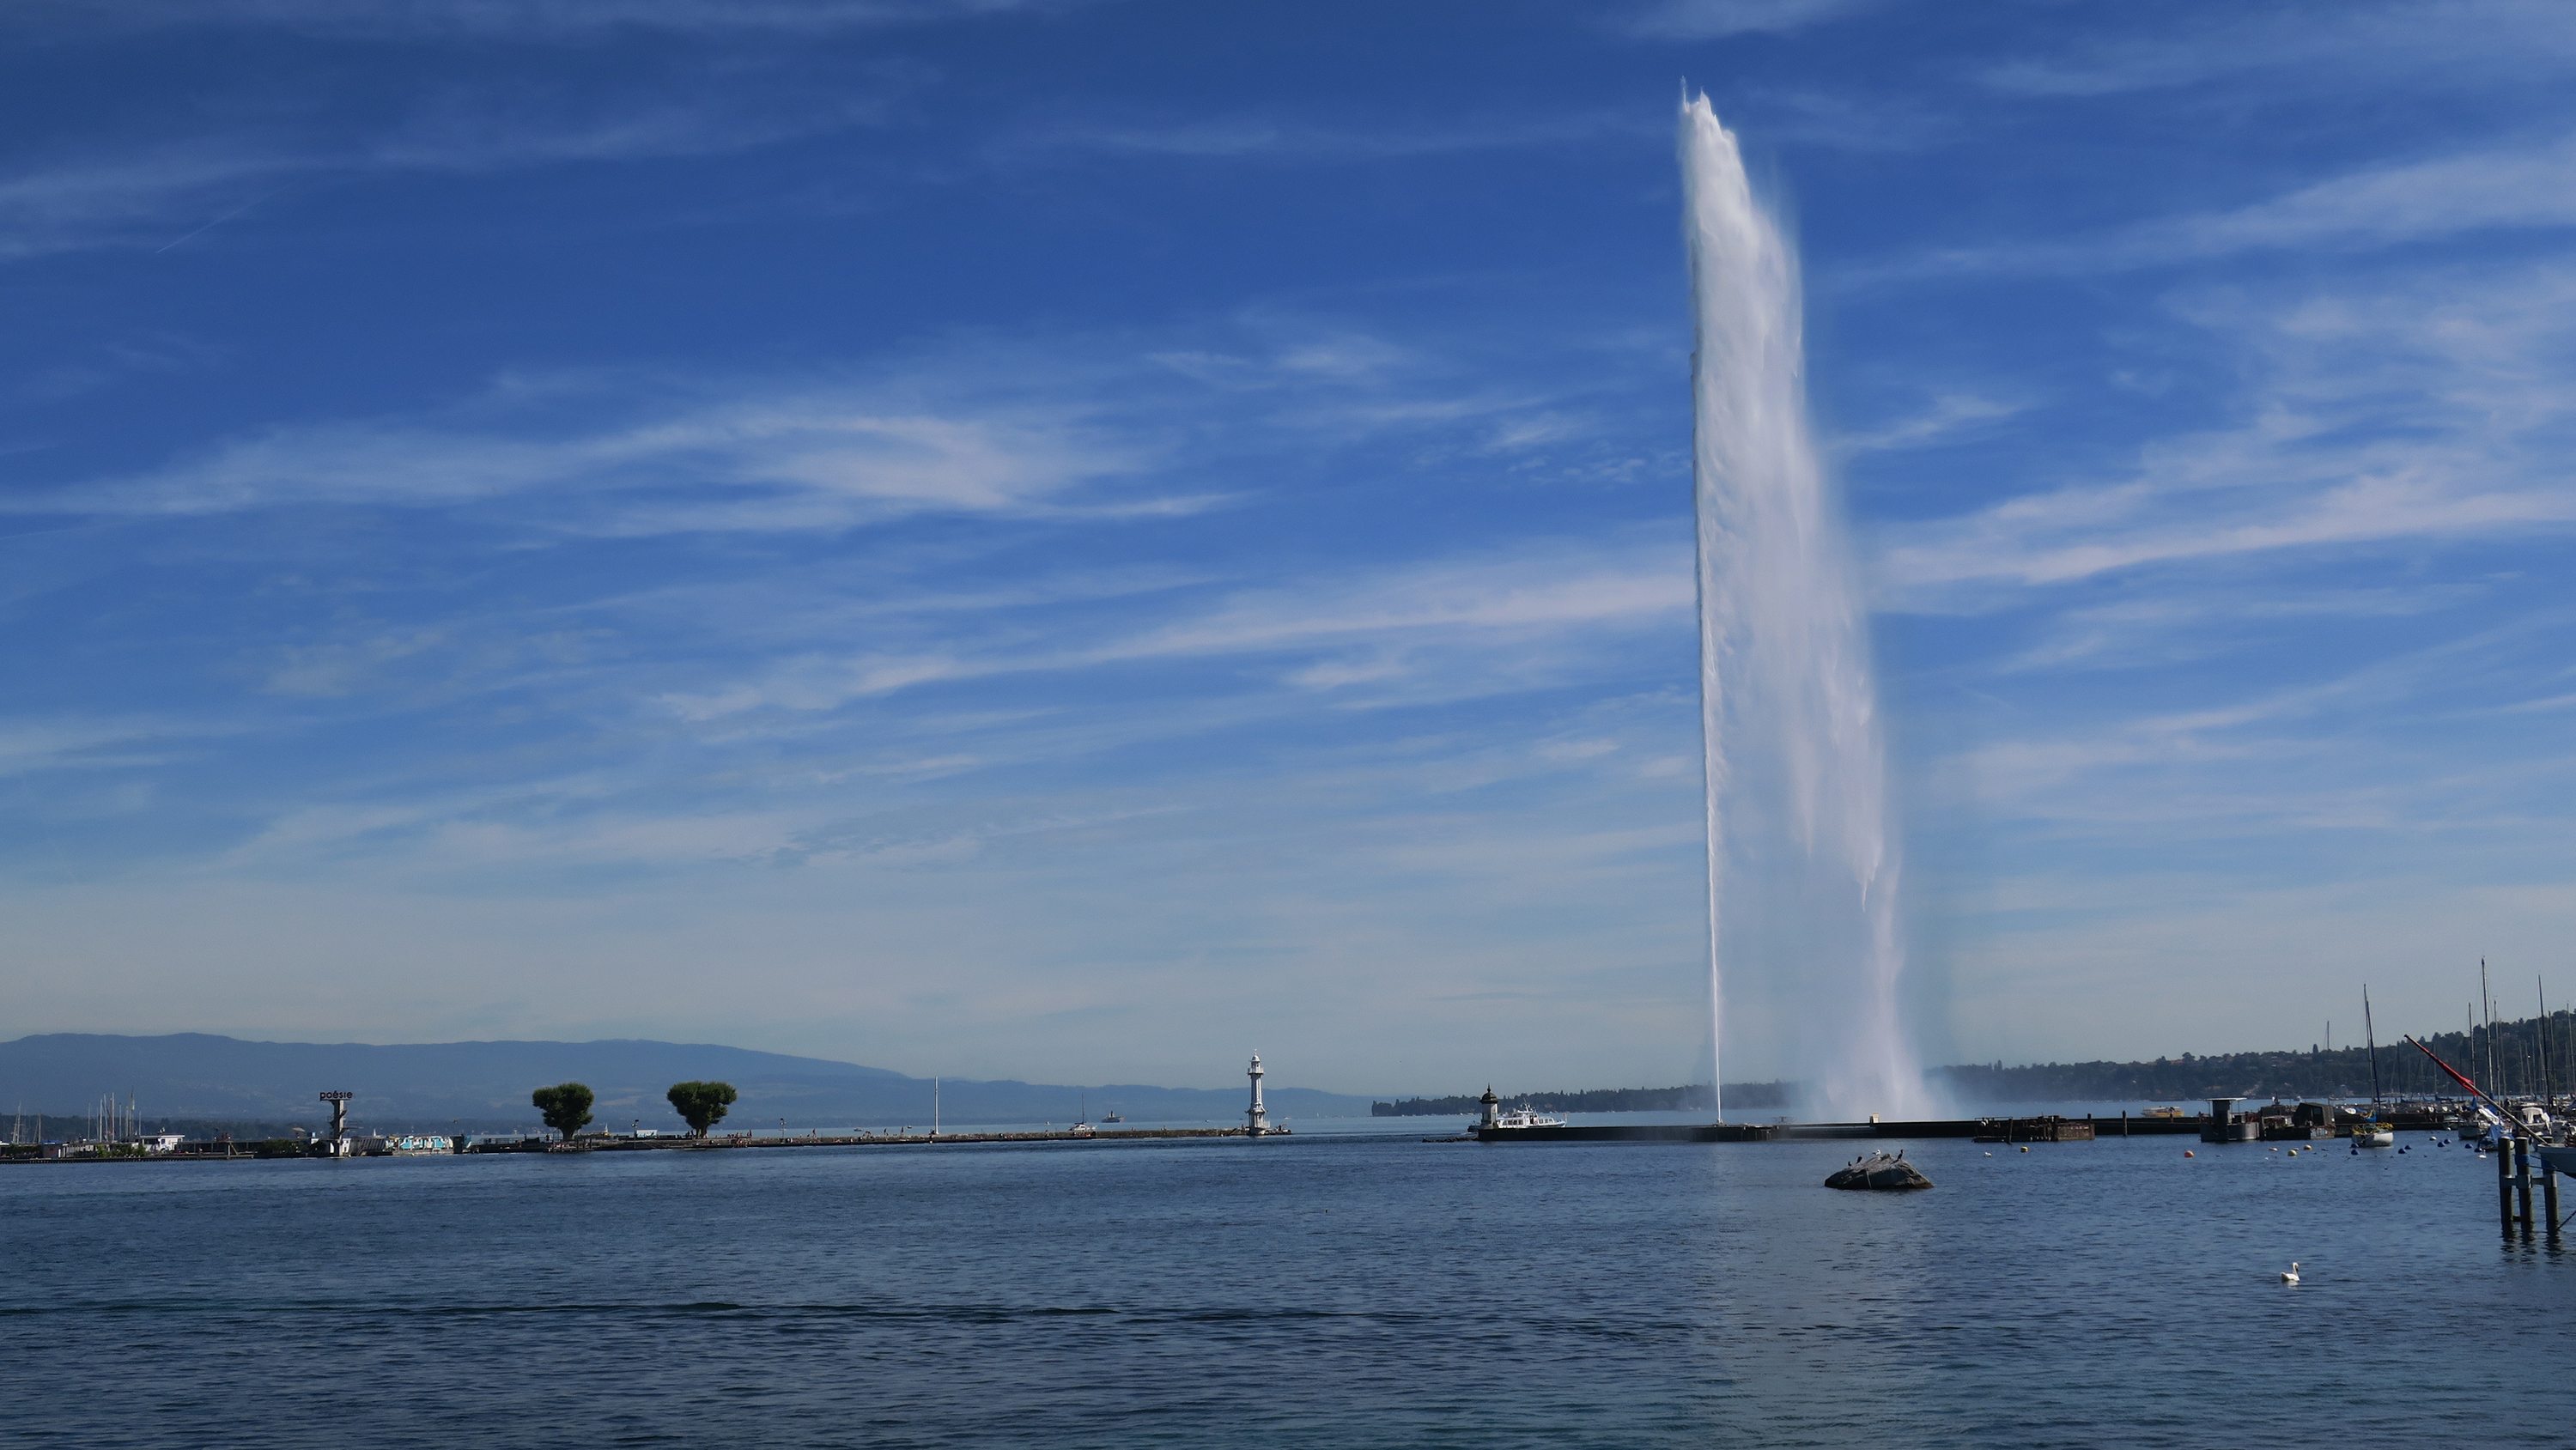 Le jet d'eau de Genève, vue depuis les quais de la ville